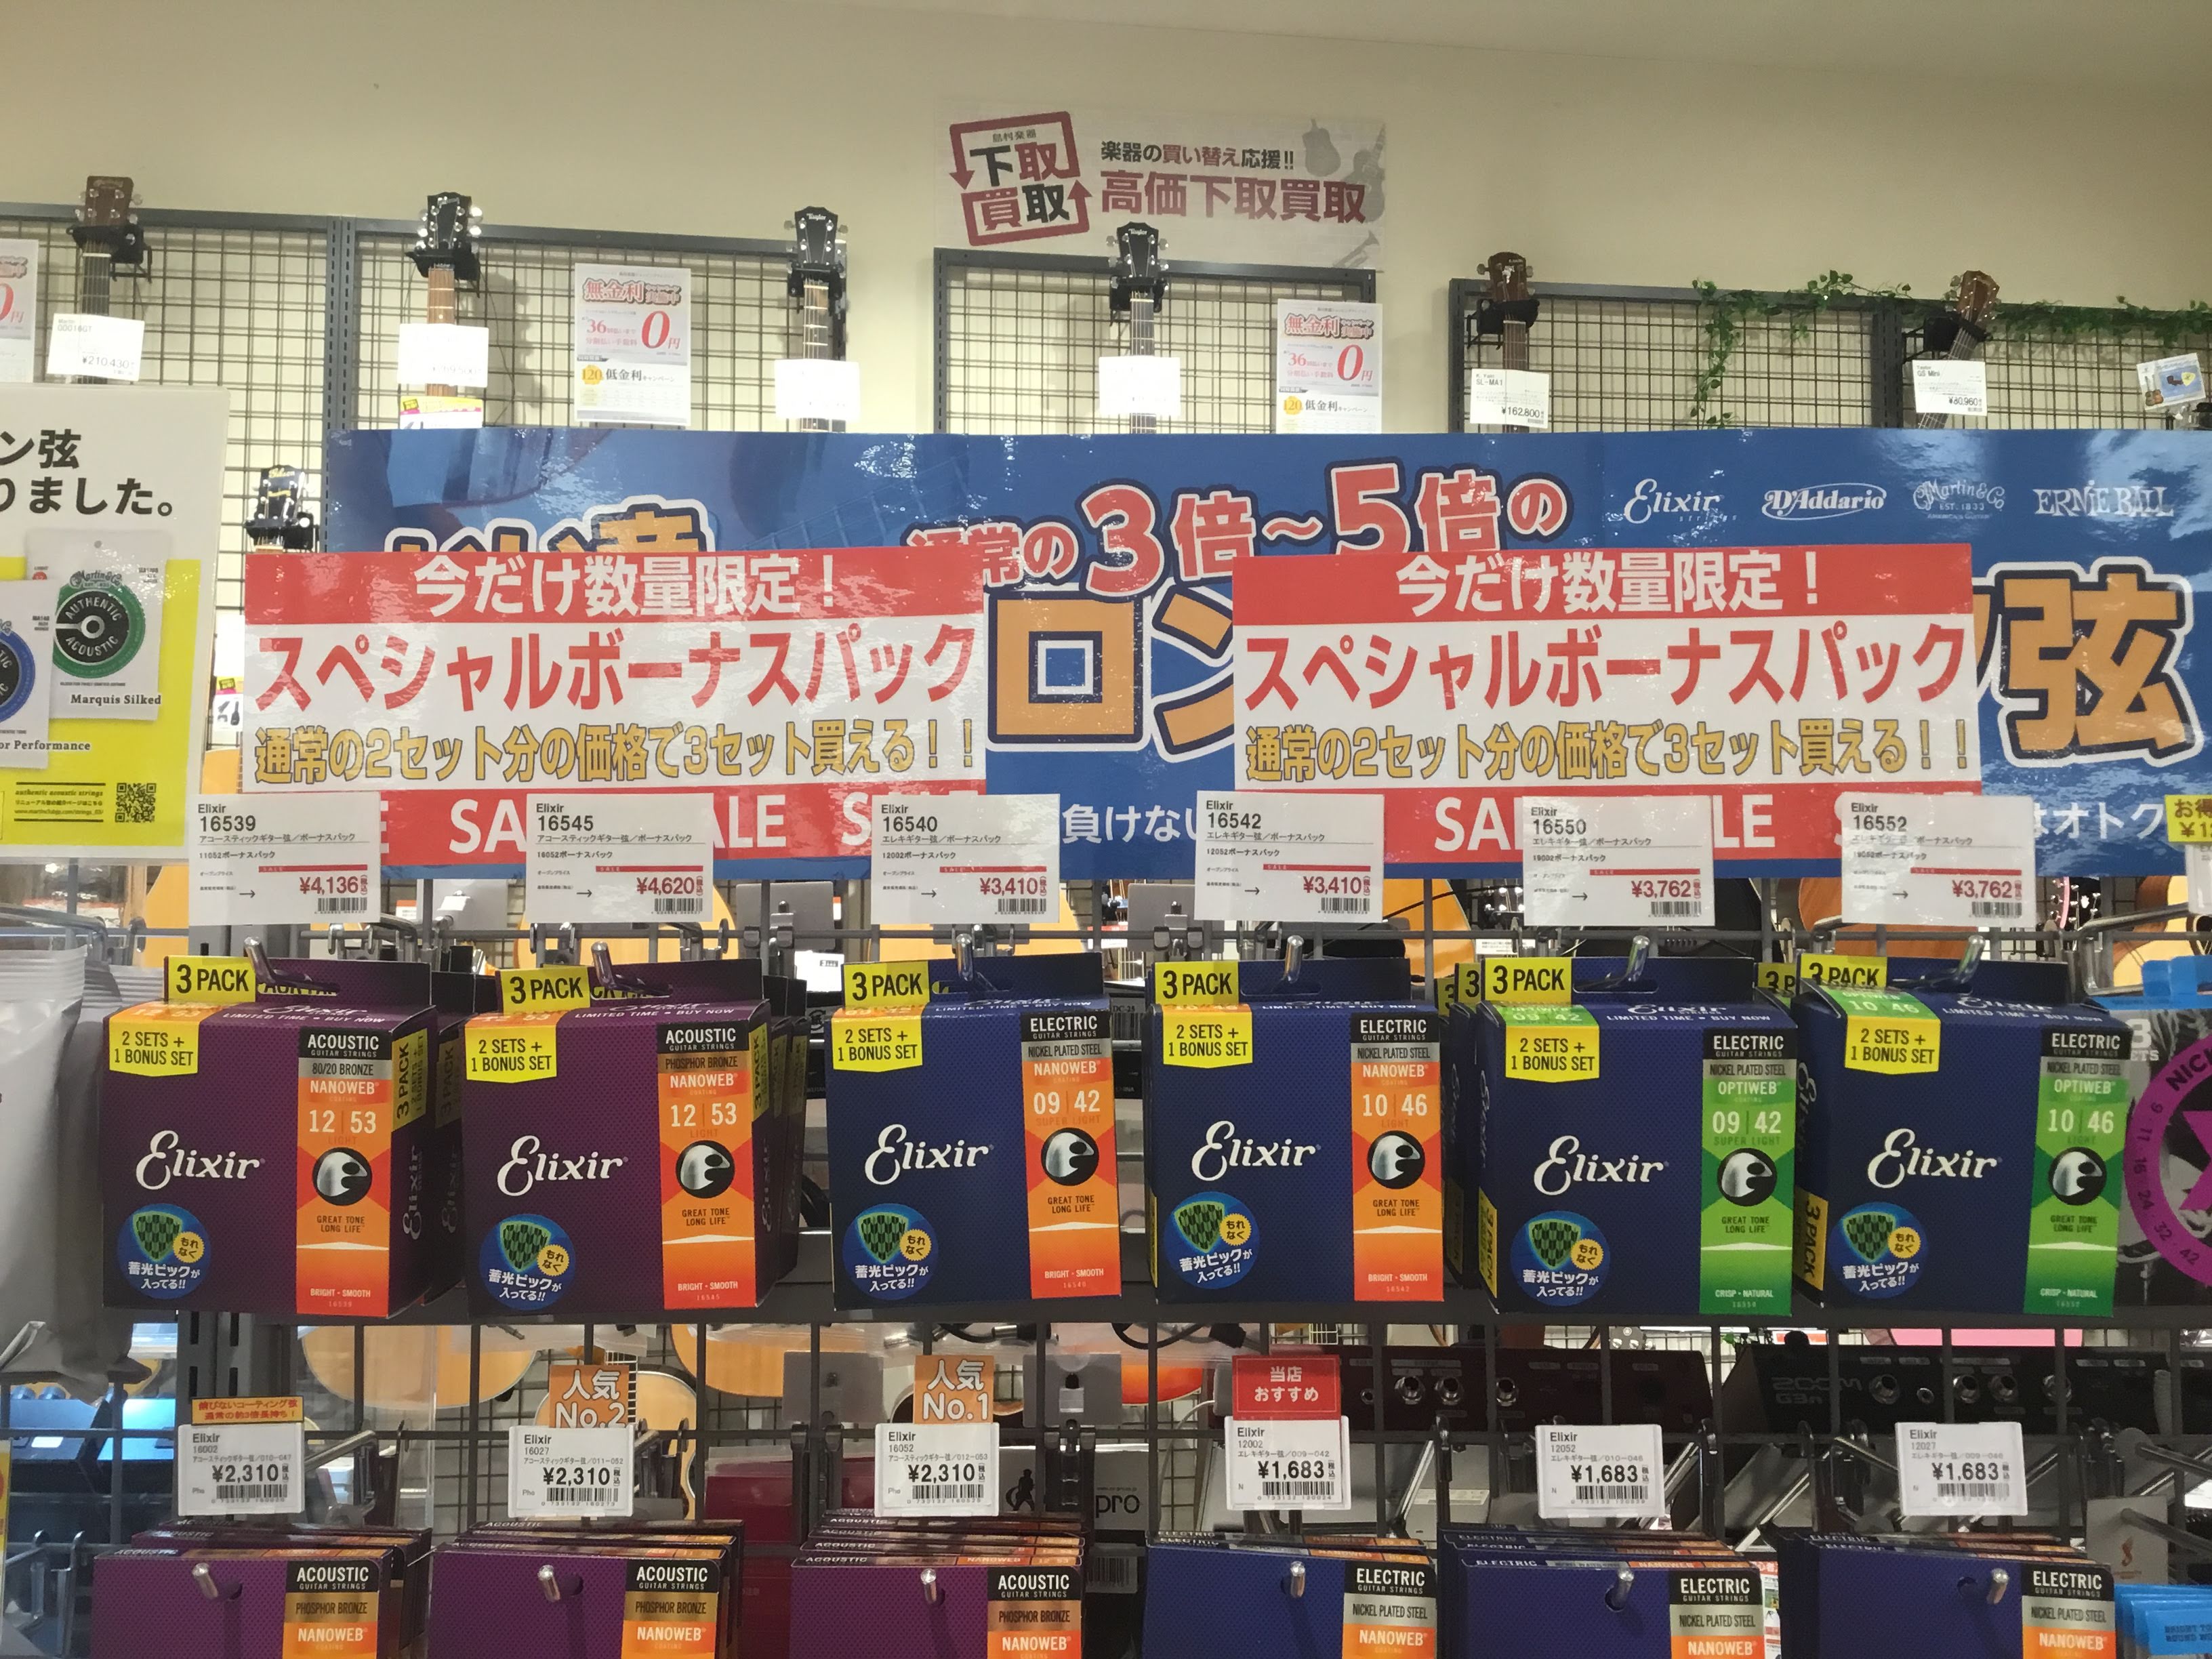 *2セットの価格で3セット入り！ 今年もエリクサーボーナスパックの季節になりました！]]もう毎年恒例のキャンペーンではないでしょうか。]] 当店で販売されているゲージはコチラ!! ***アコースティックギター |[https://www.shimamura.co.jp/shop/kyoto/wp-c […]